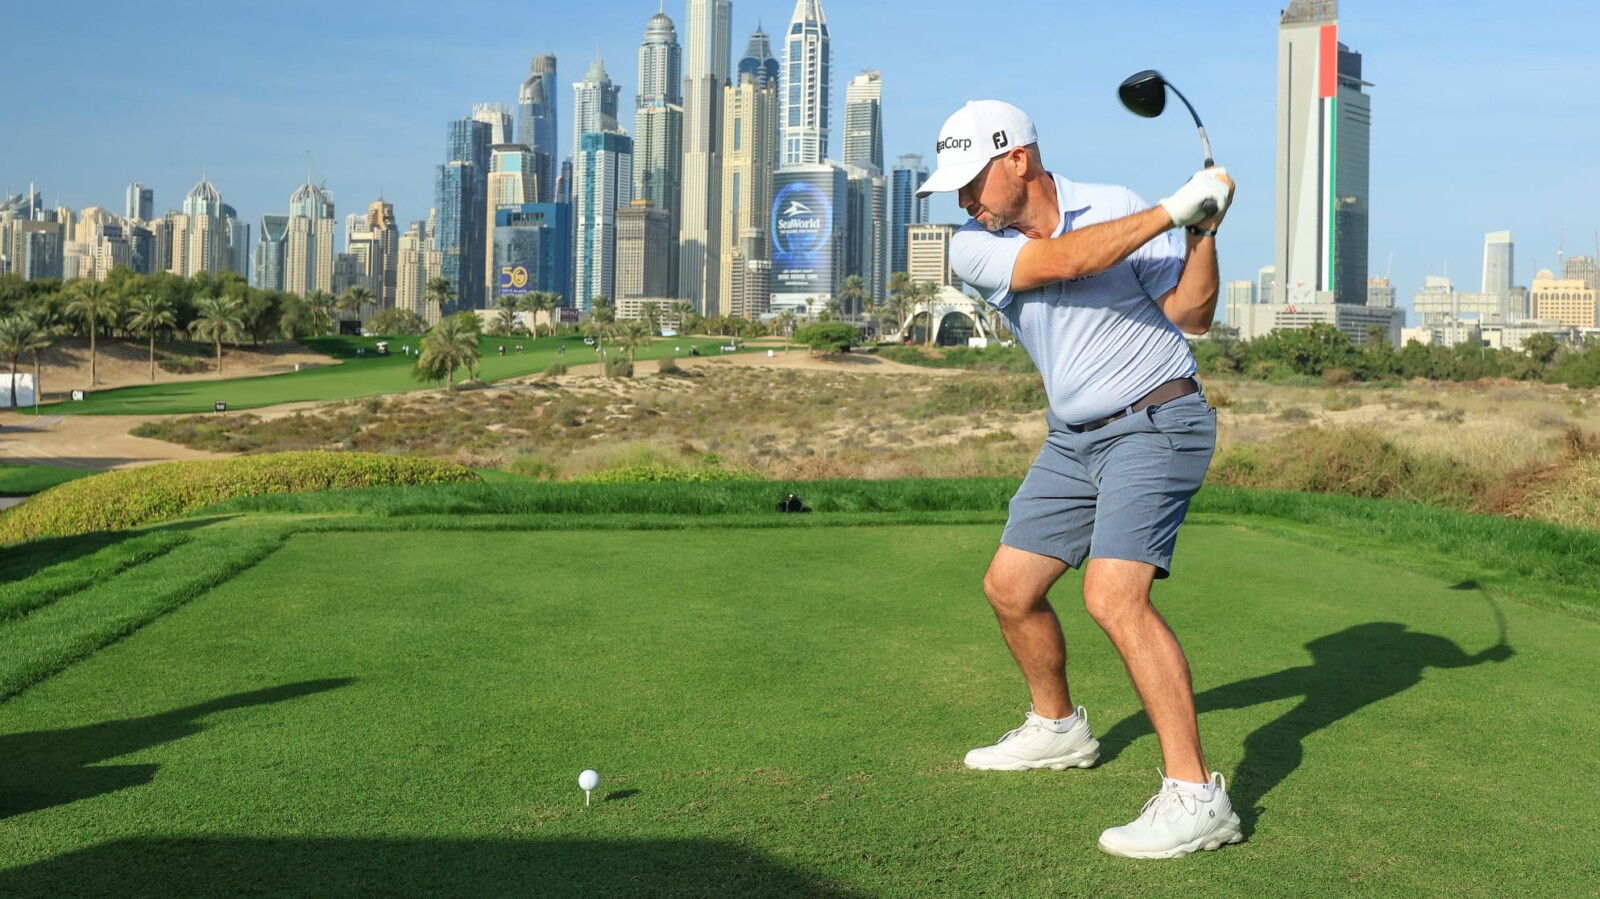 VISTA PREVIA DEL CLÁSICO DEL DESIERTO DE DUBAI - Noticias de golf | Revista de golf